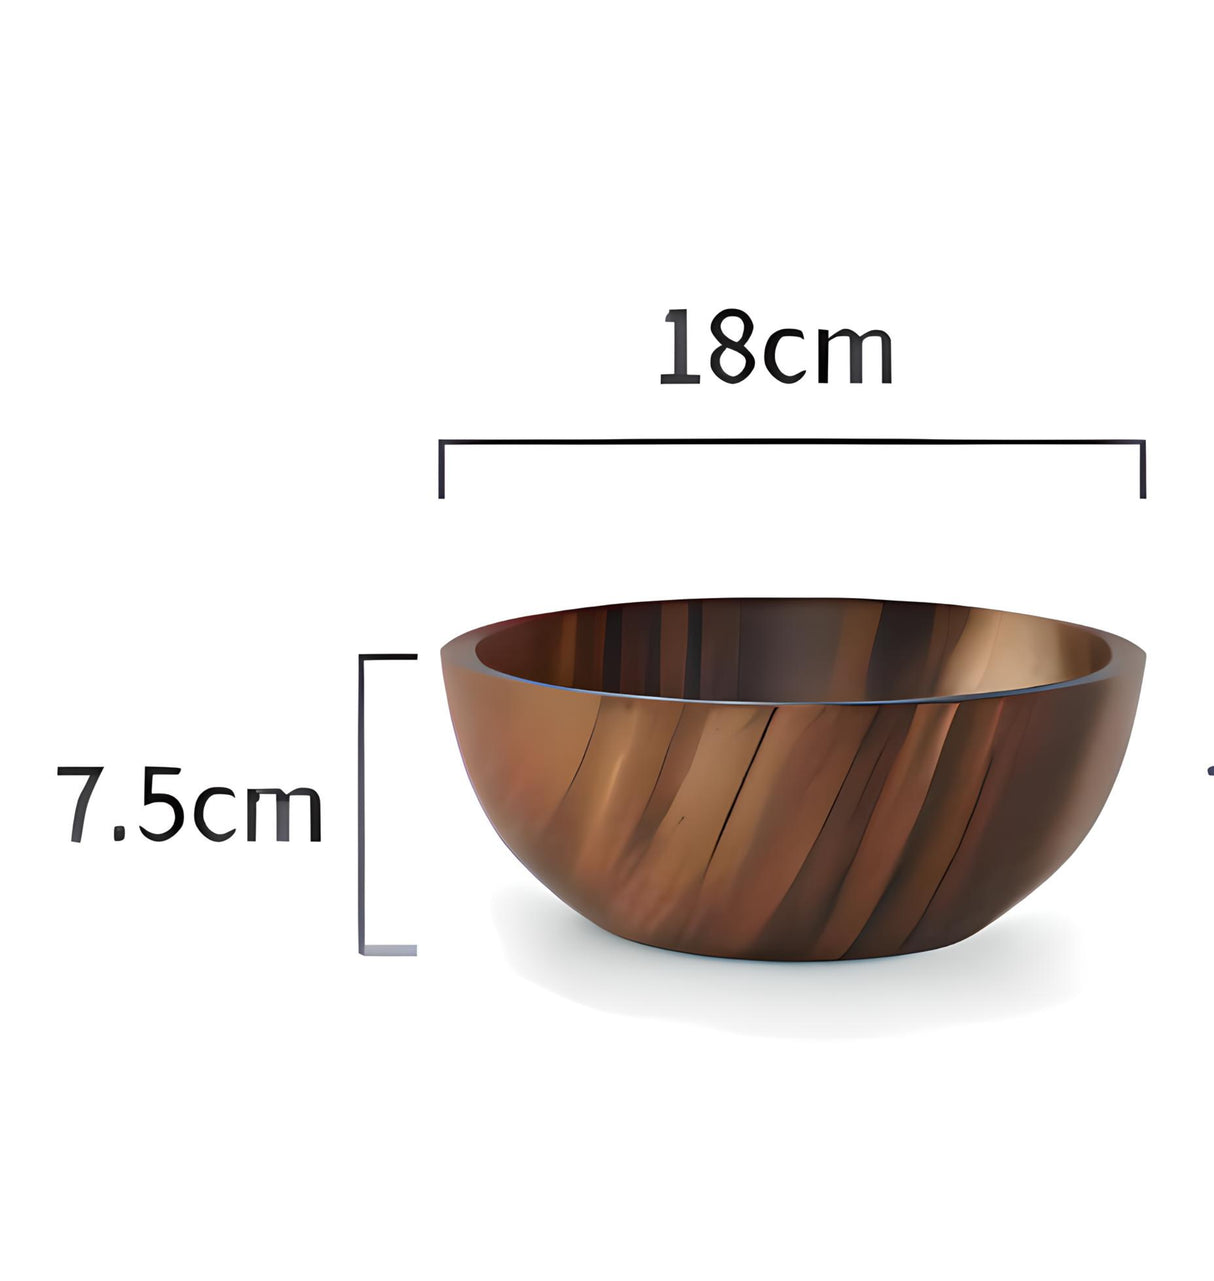 Acacia Wood Tableware Set Acacia Wood Tableware Set CJJJCFCJ01965-Brown-10X6cm wooden bowls 18